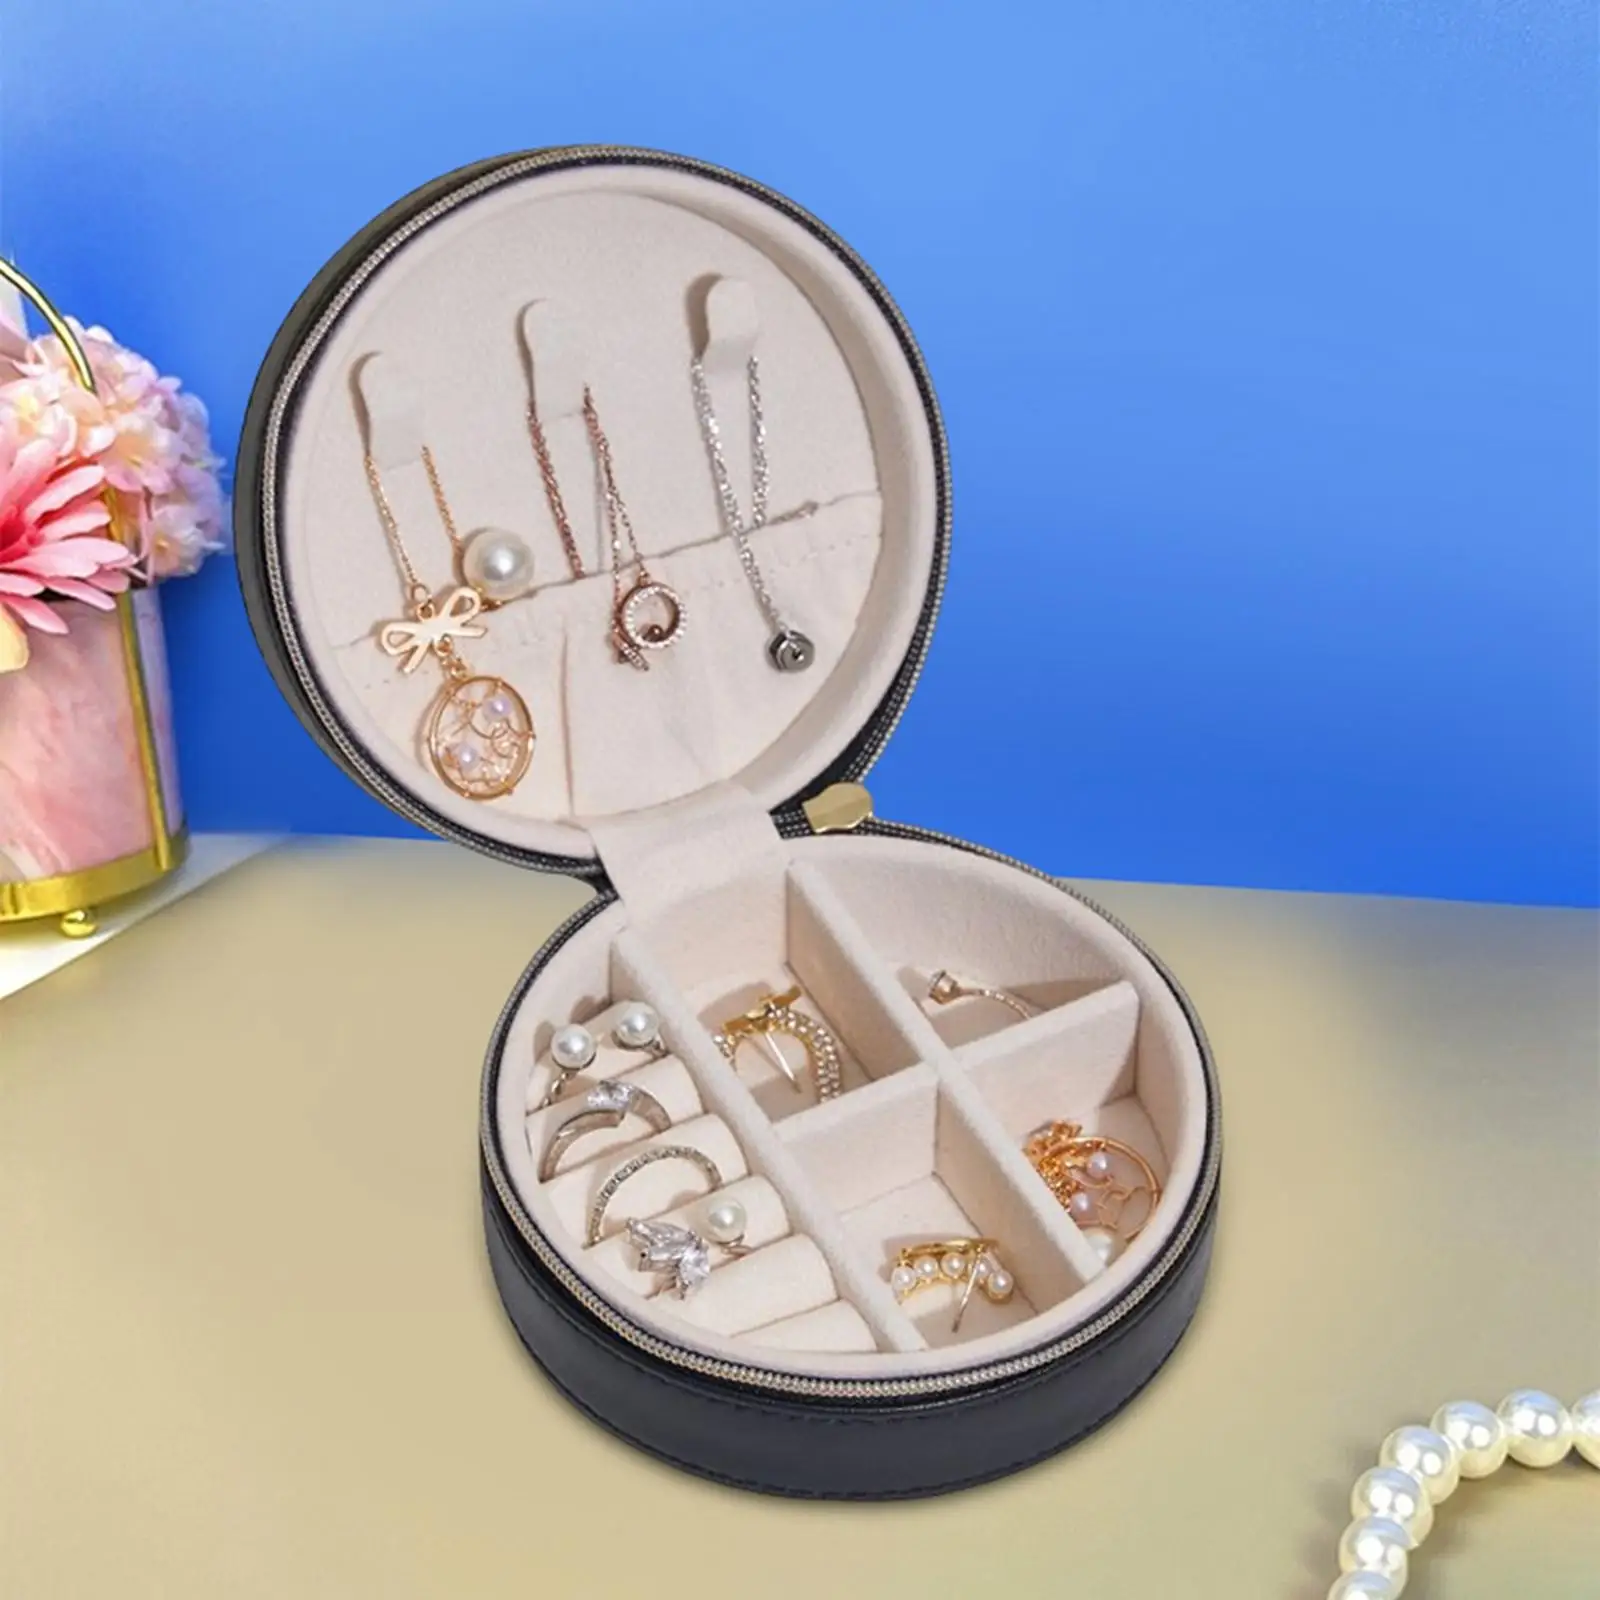 Travel Small Jewelry Box Watch Earrings Bracelets Cufflinks Case Velvet Lined Organizer Jewelry Holder Women Girls Wife Gift